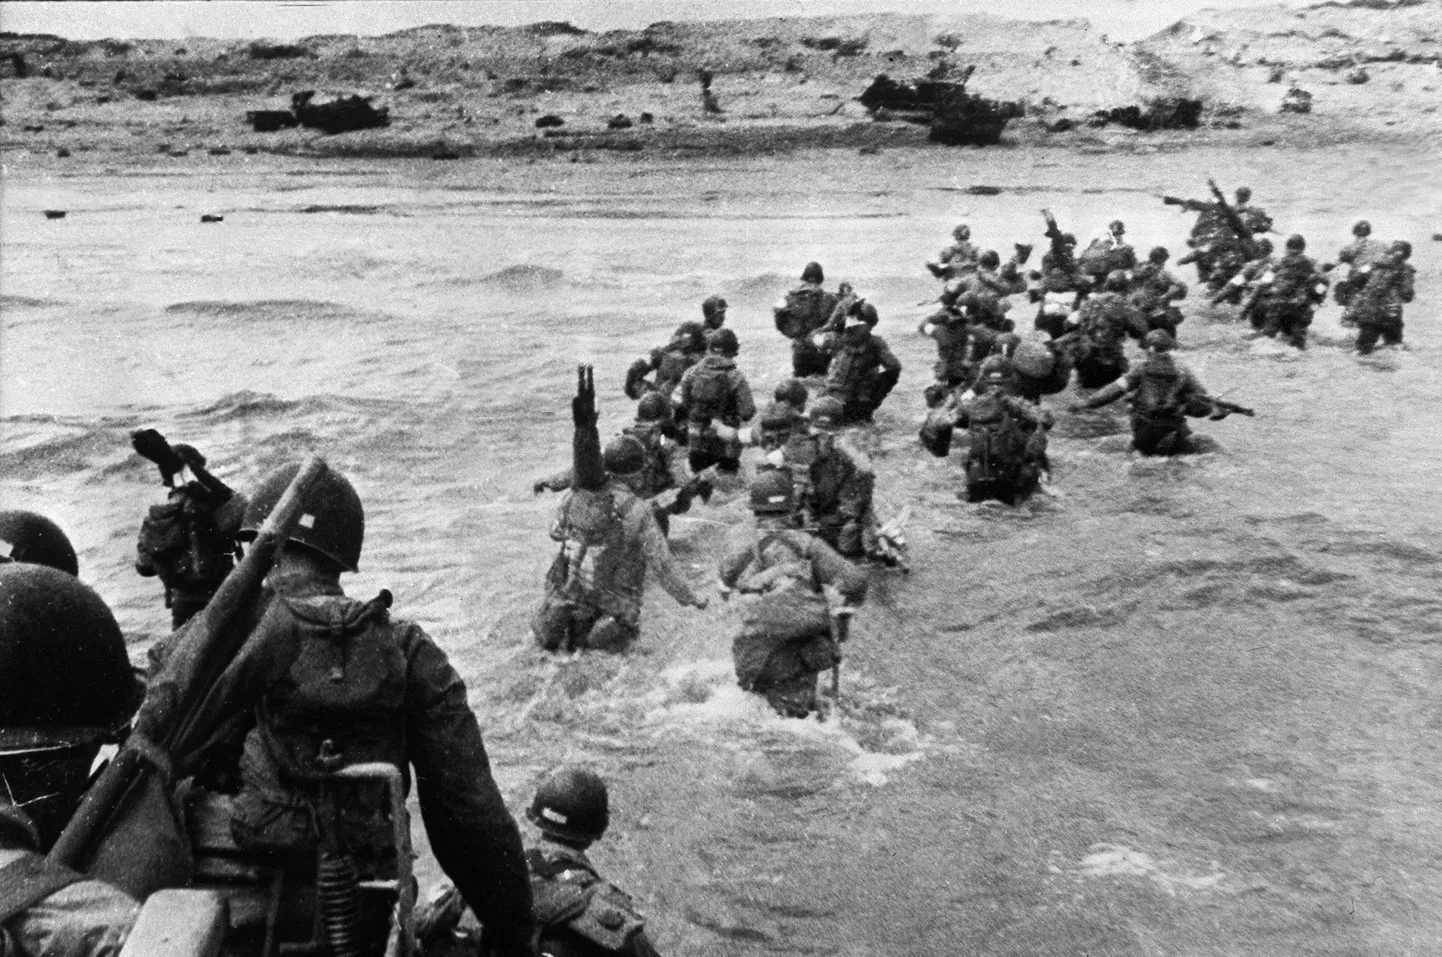 Ajalooline foto USA sõdurites, kes maabusid 6. juunil 1944 Prantsusmaal Normandias. Normandia dessant tõi pöörde teise maailmasõtta